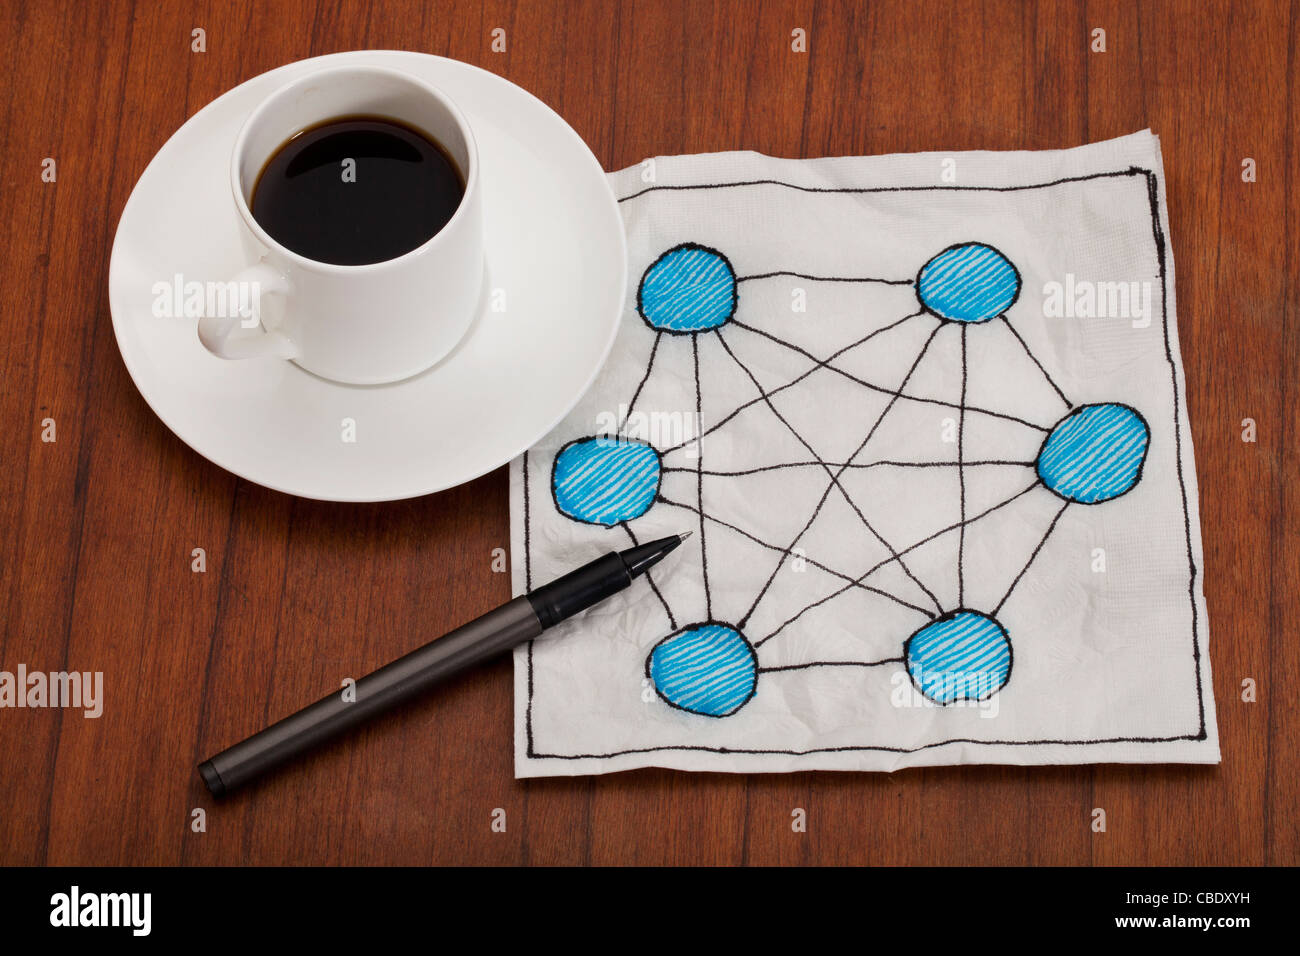 Concept de réseau entièrement connecté (mesh) - Serviette doodle avec la tasse de café espresso sur table Banque D'Images